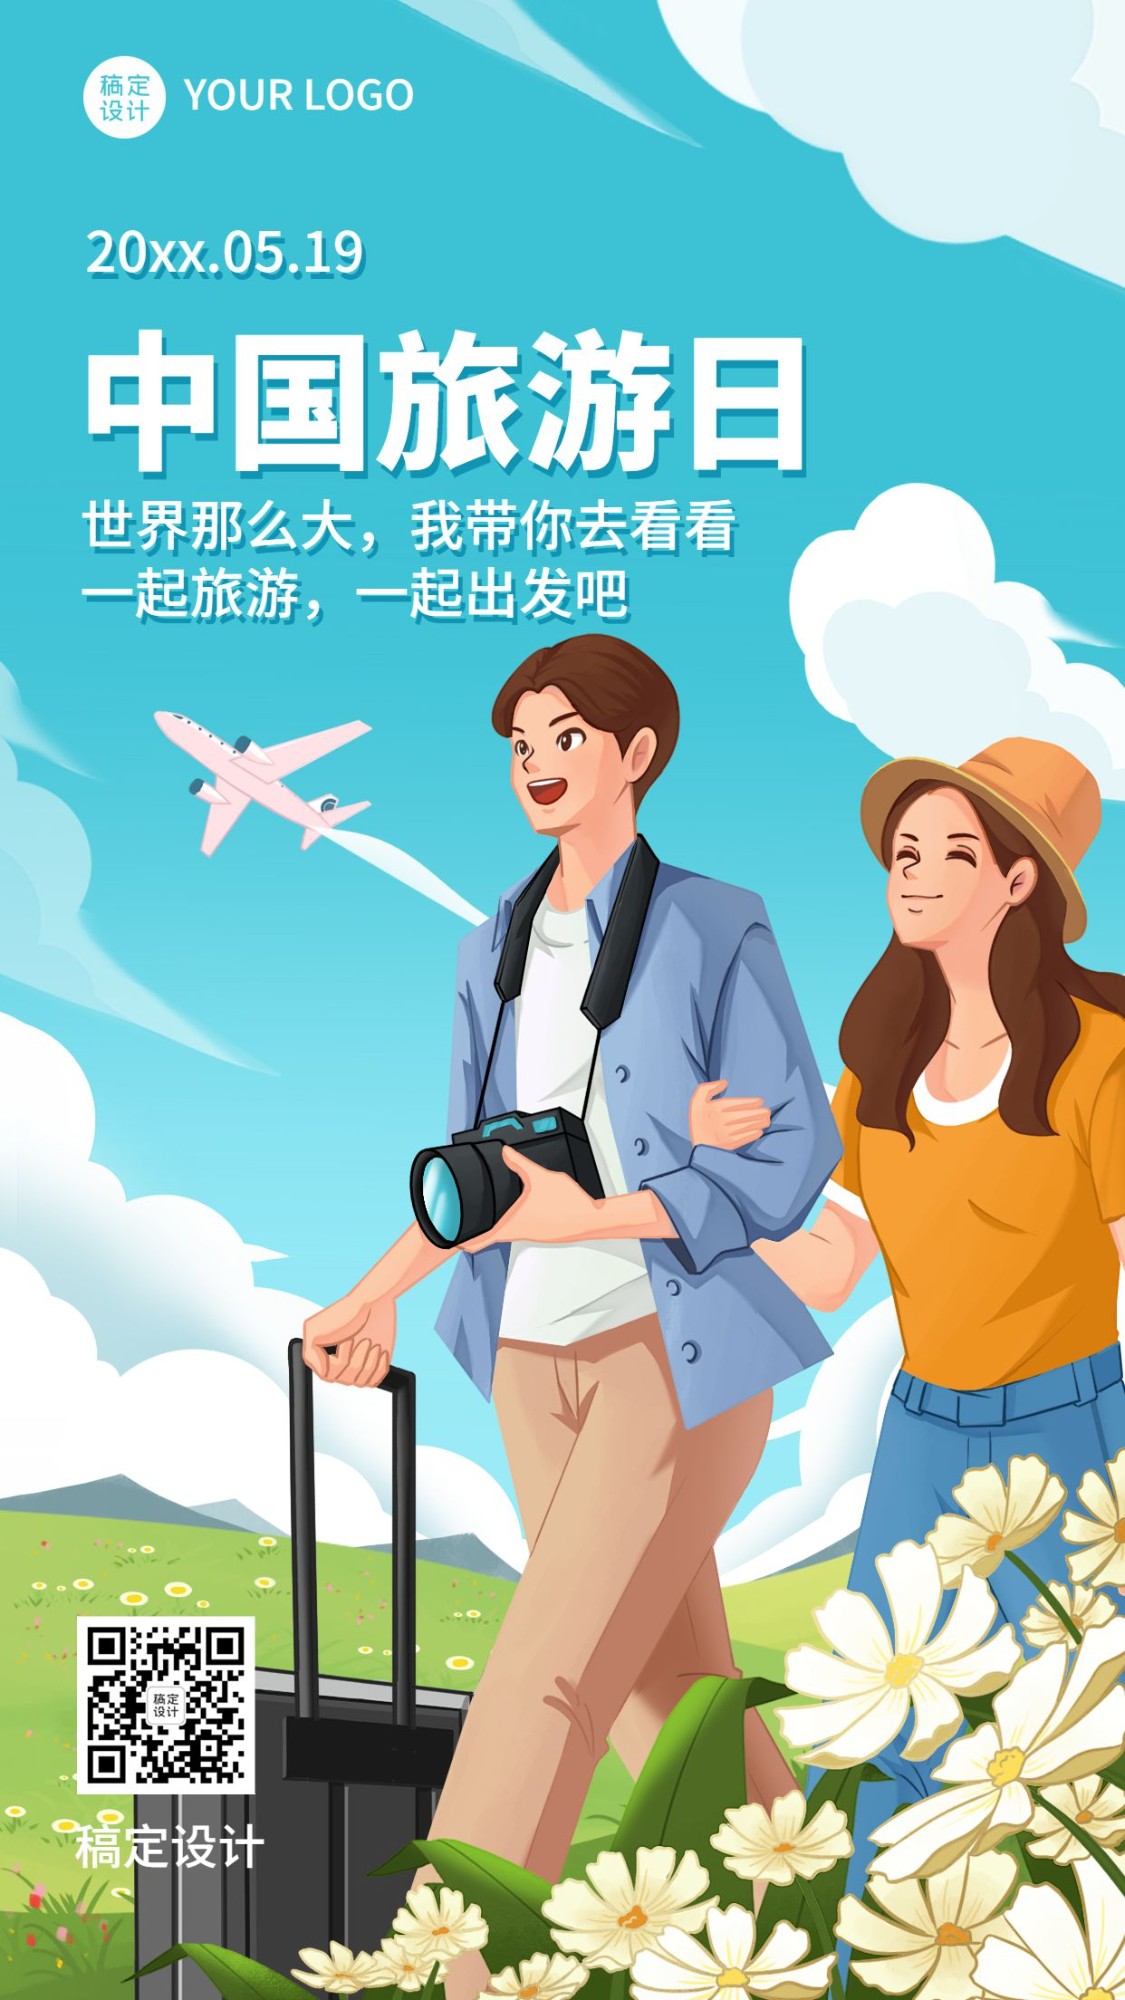 中国旅游日出游景点推荐手机海报预览效果